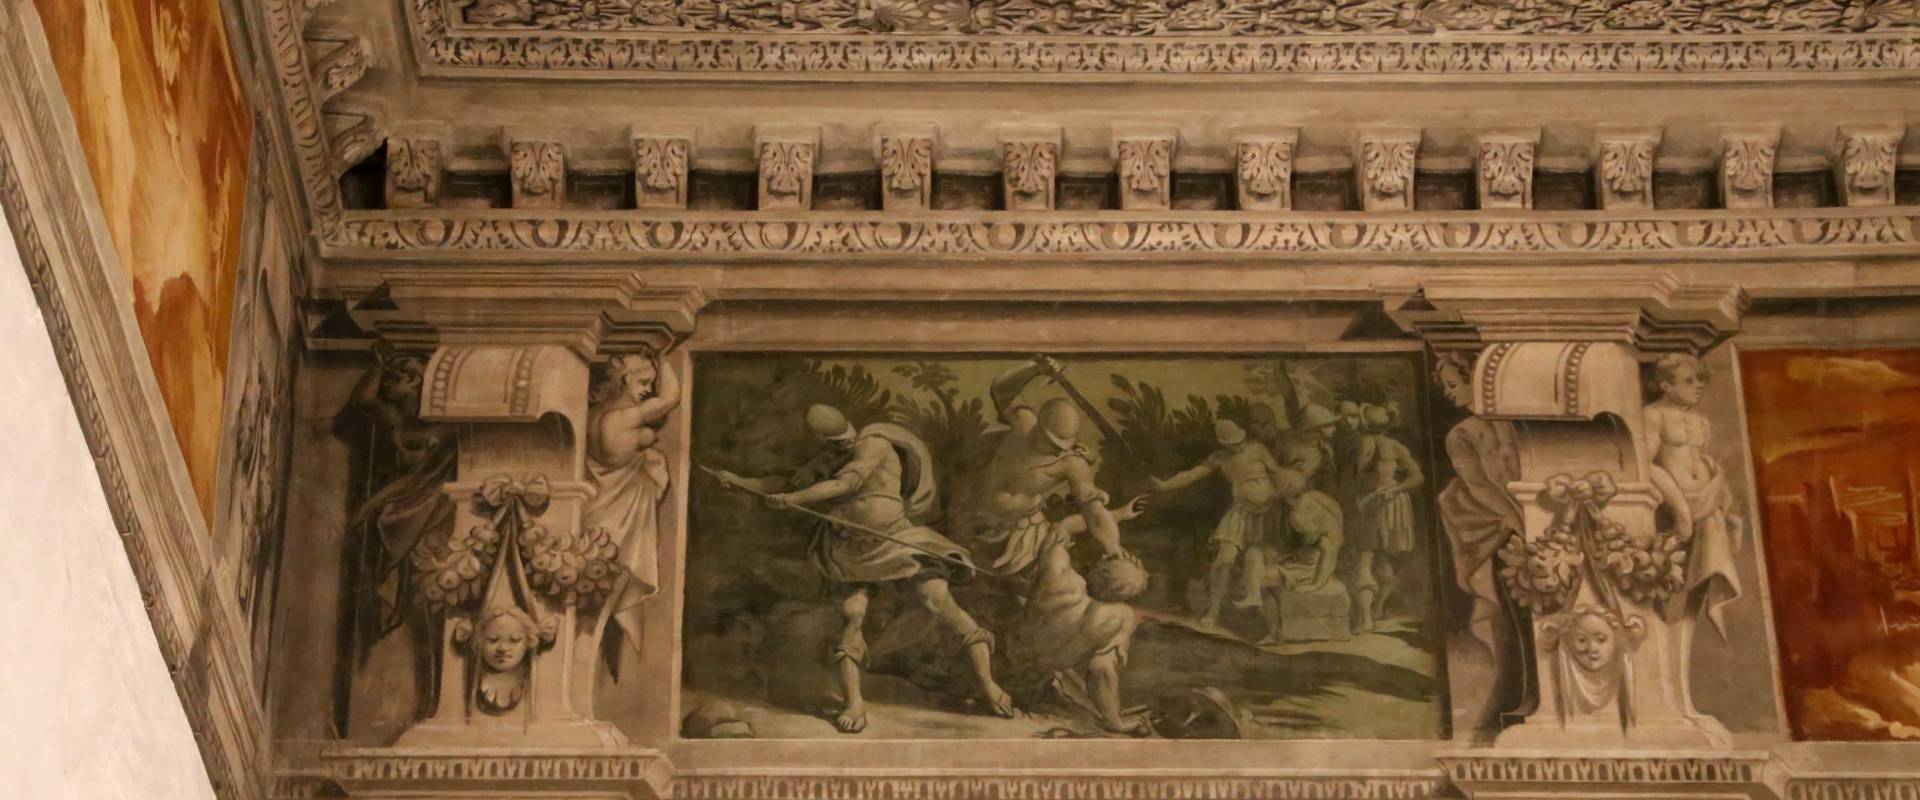 Gualtieri, palazzo bentivoglio, sala di giove, fregio con storie di roma da tito livio, 1600-05 circa, 03 photo by Sailko